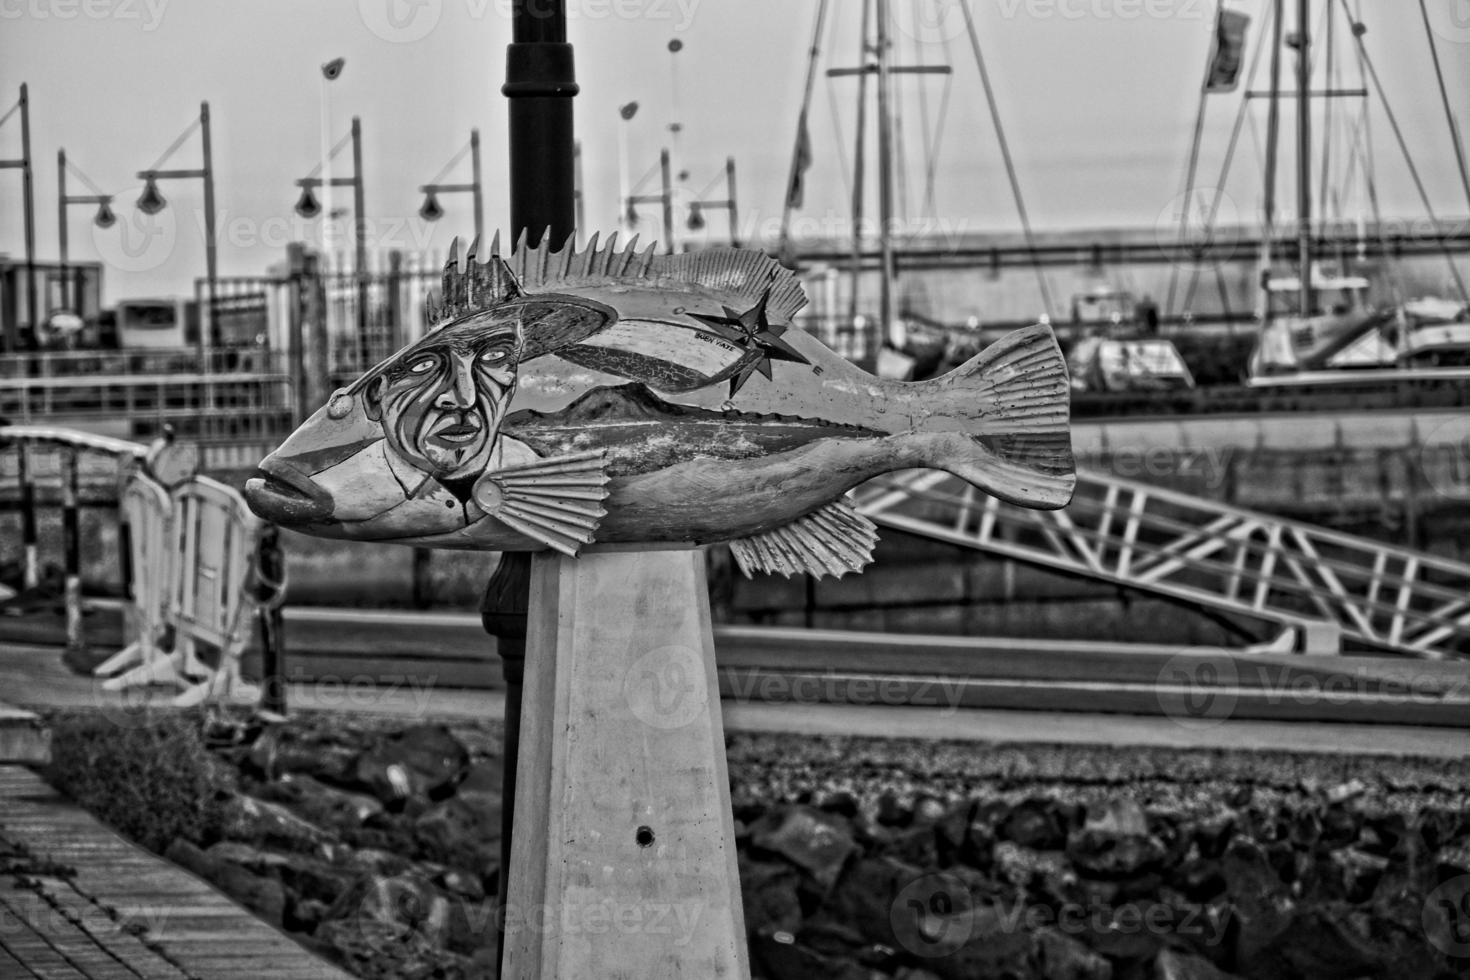 coloré amusement poisson les monuments dans le Port de corralejo, Espagne photo